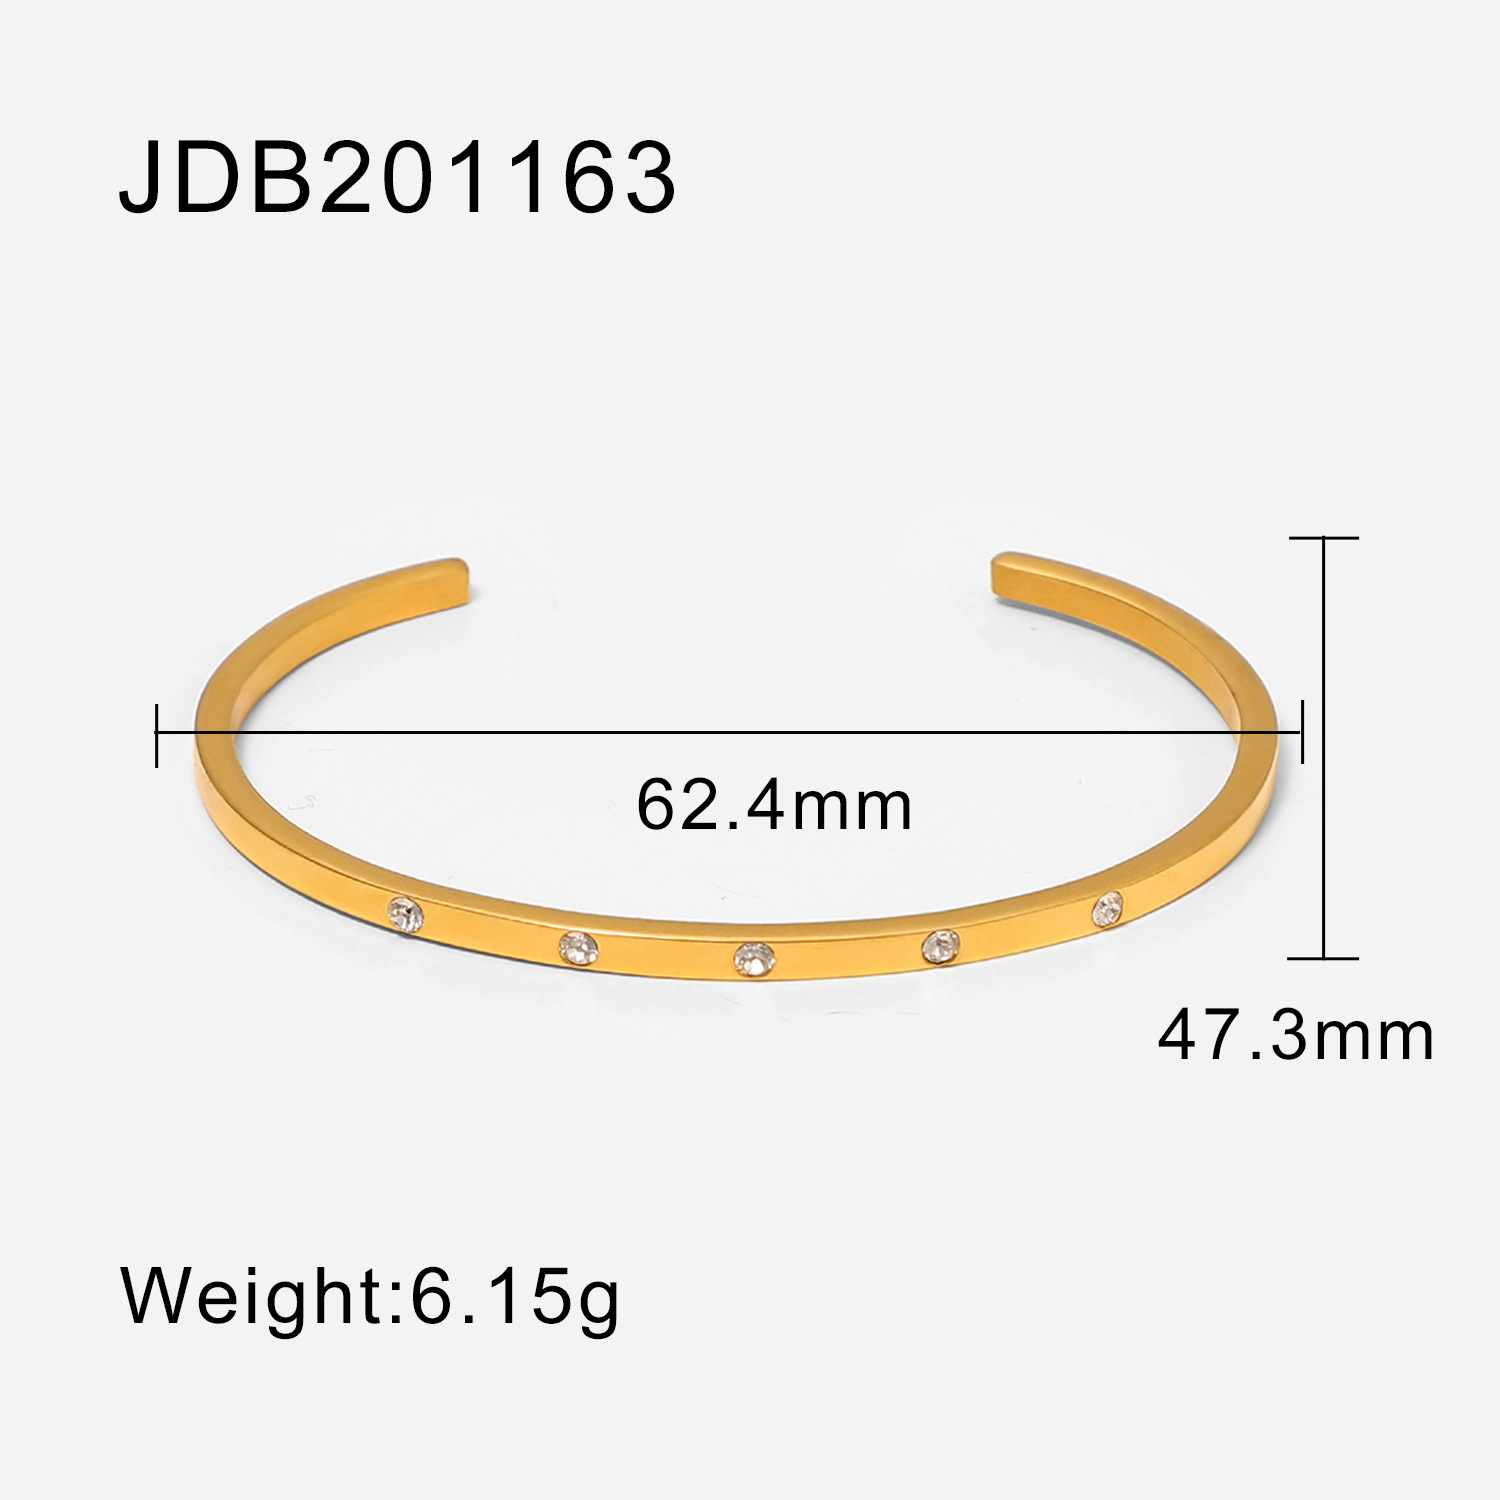 JDB201163 size